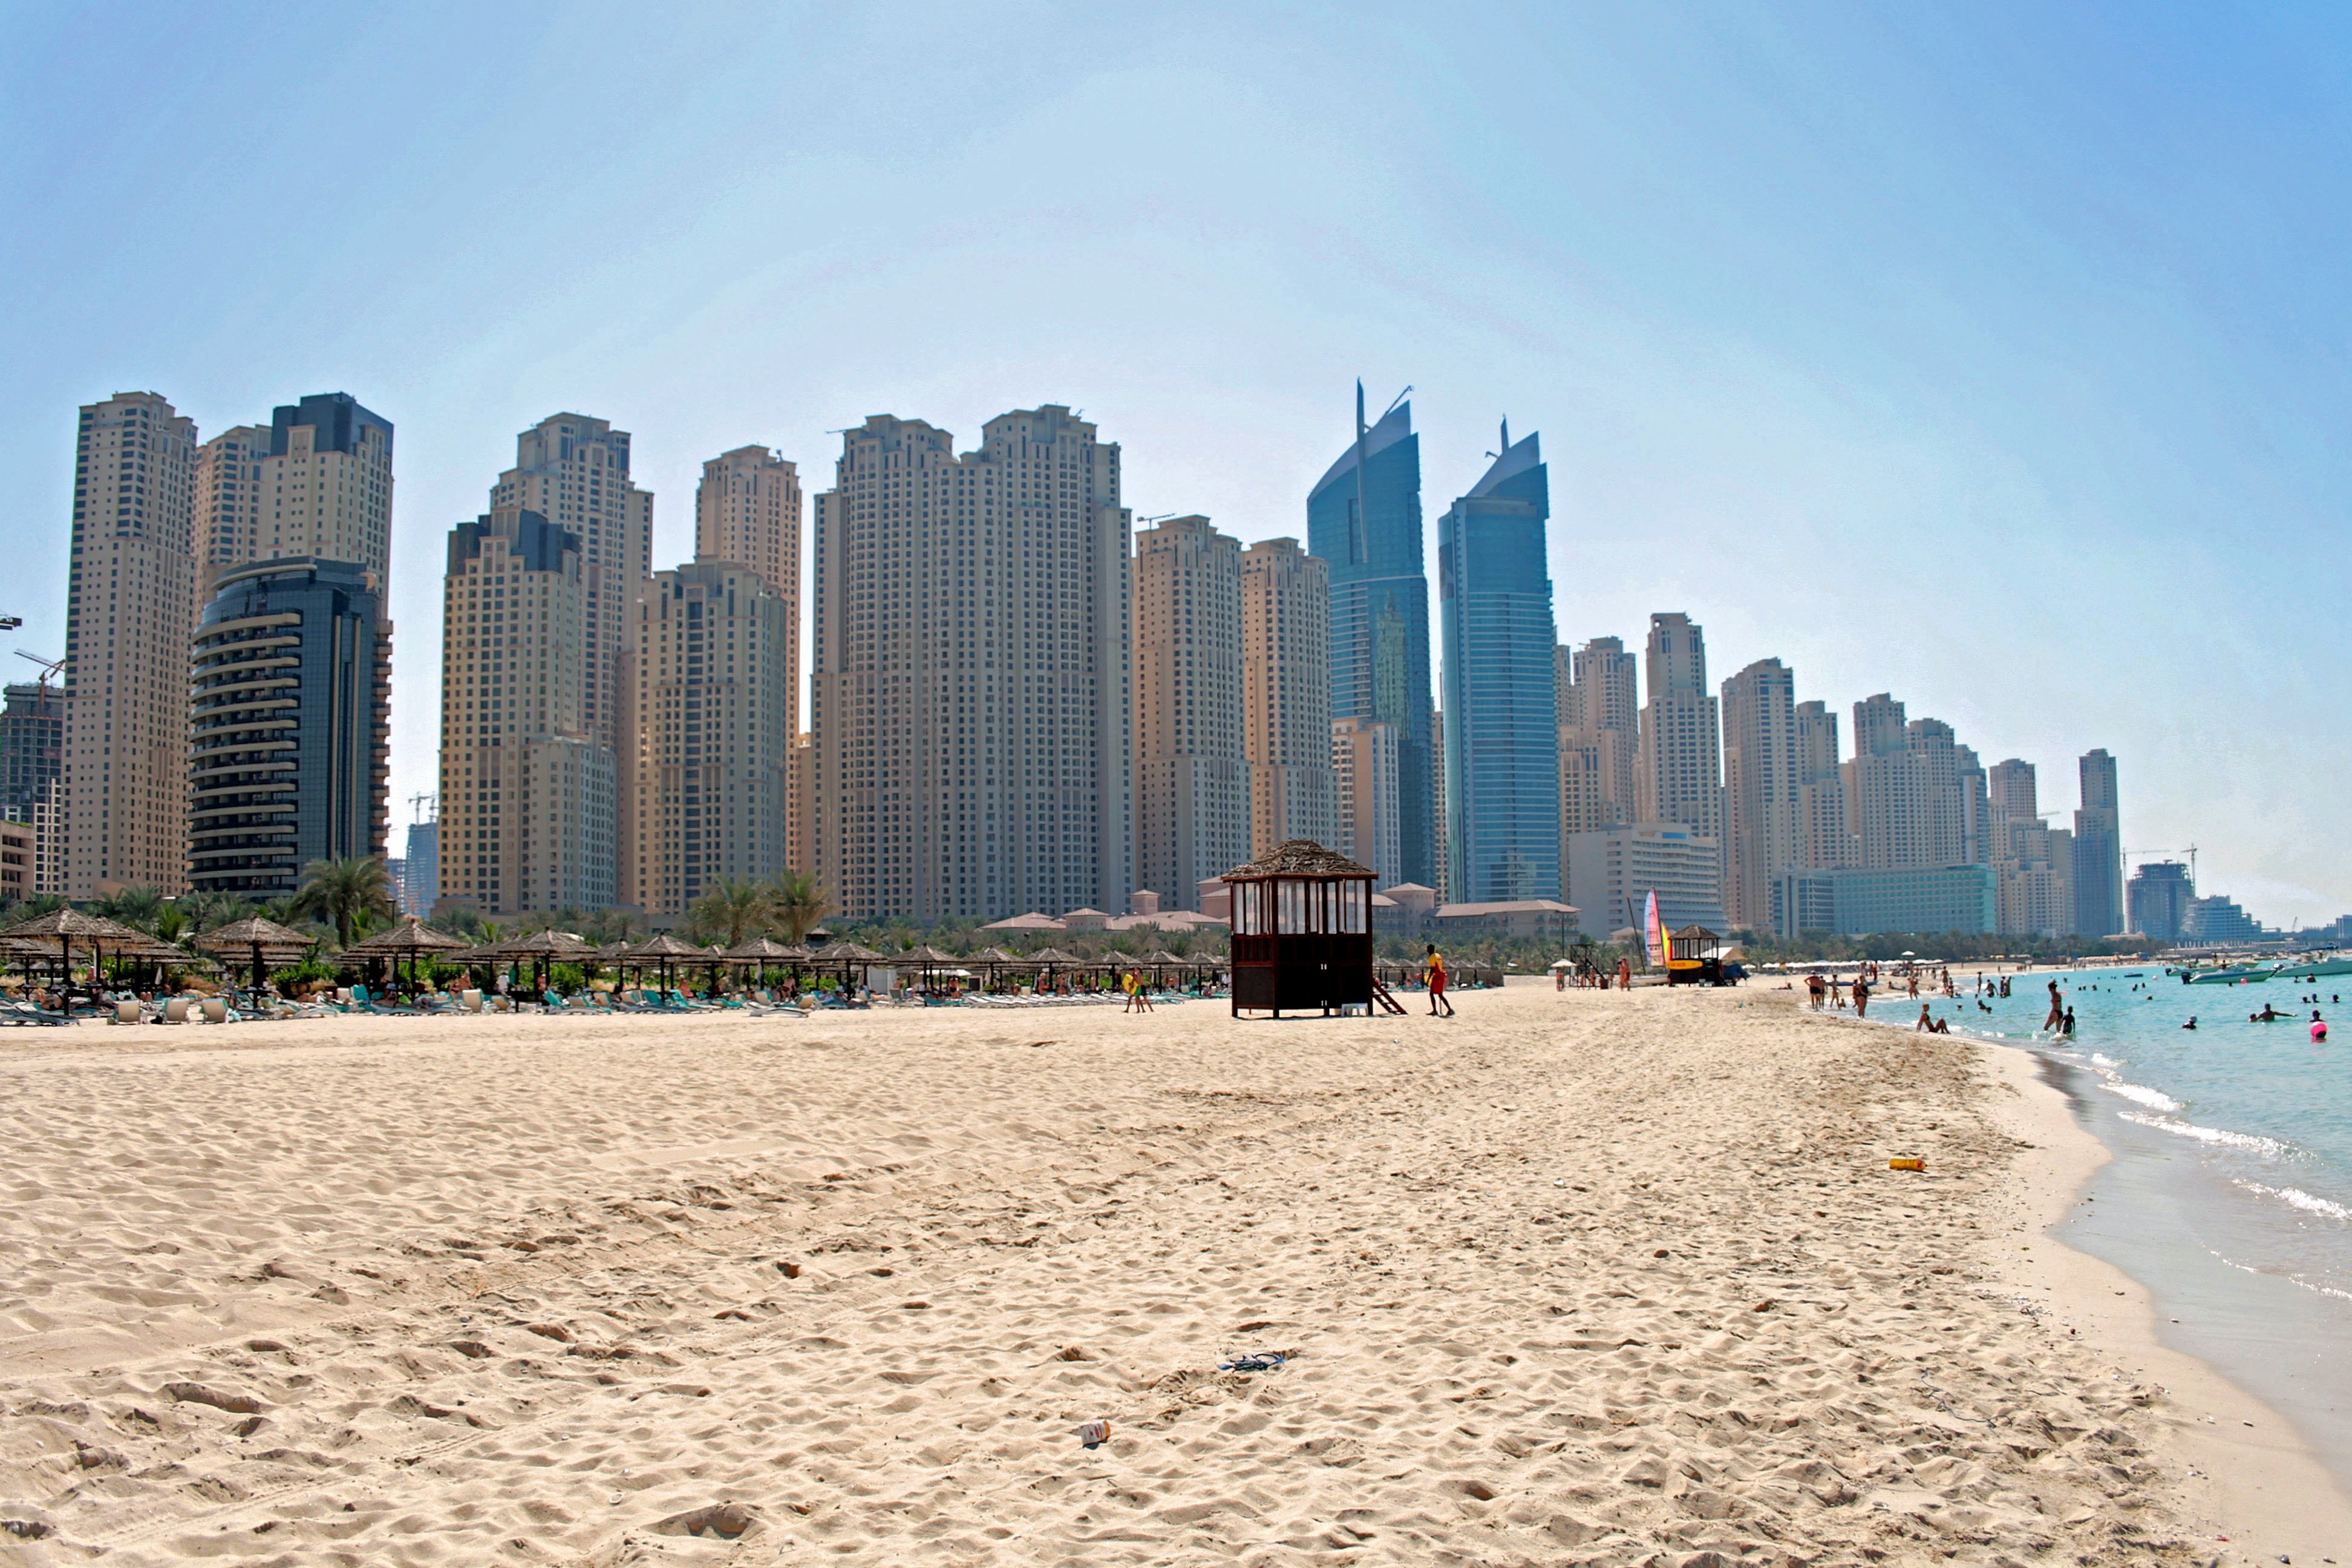 اماكن سياحية   السياحة في دبي   فصل الصيف   الصيف   دبي   الامارات